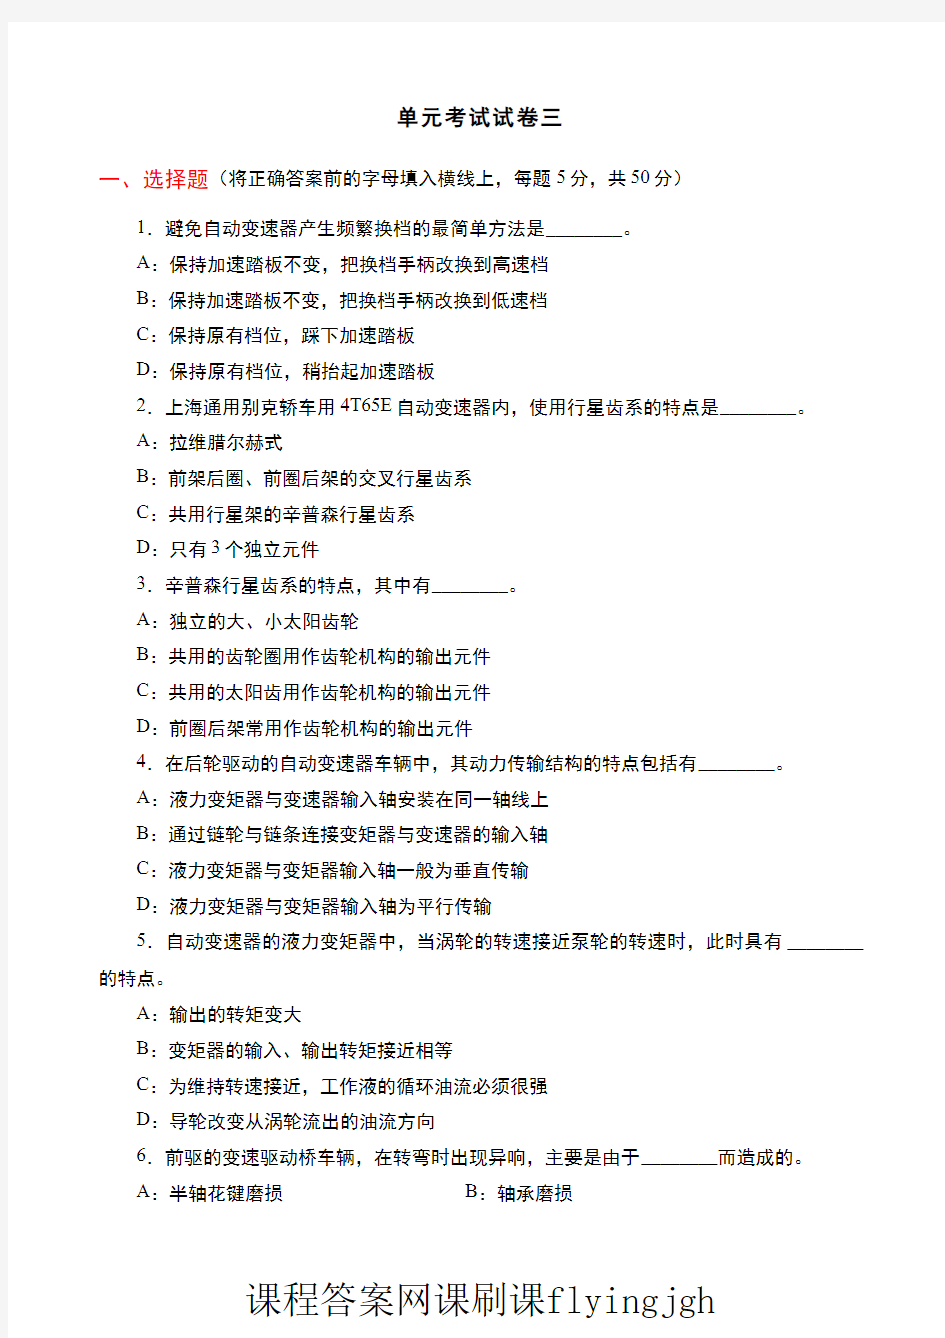 中国大学MOOC慕课爱课程(3)--情境一考试试卷3及参考答案网课刷课挂课